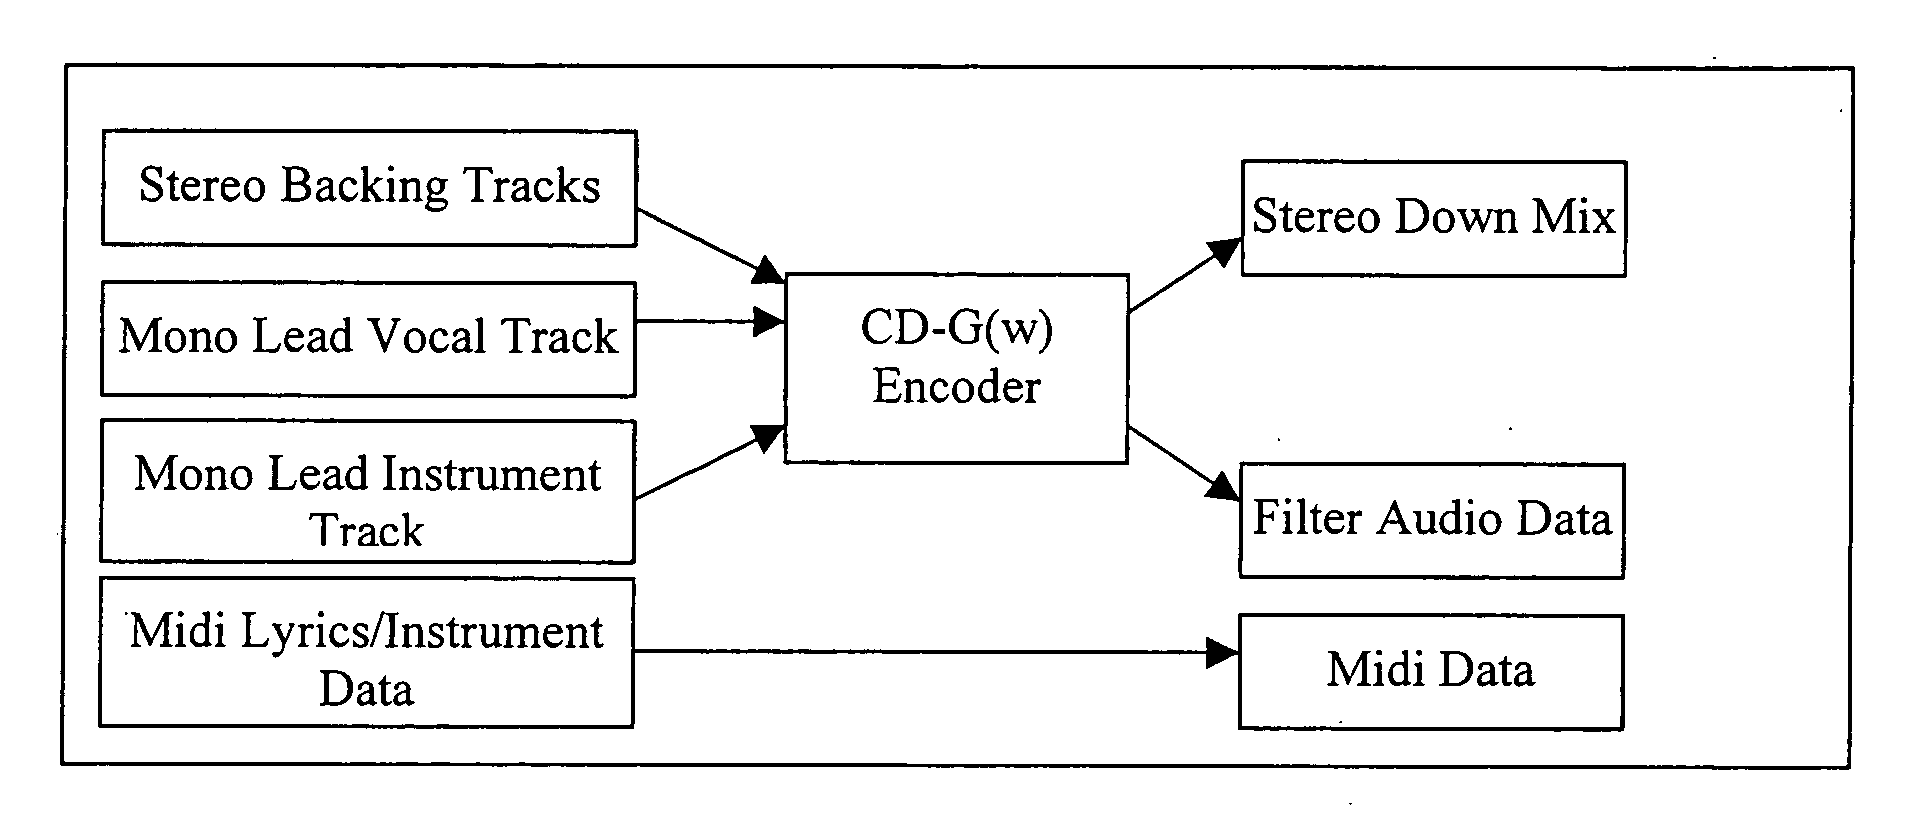 Multi-channel compatible stereo recording